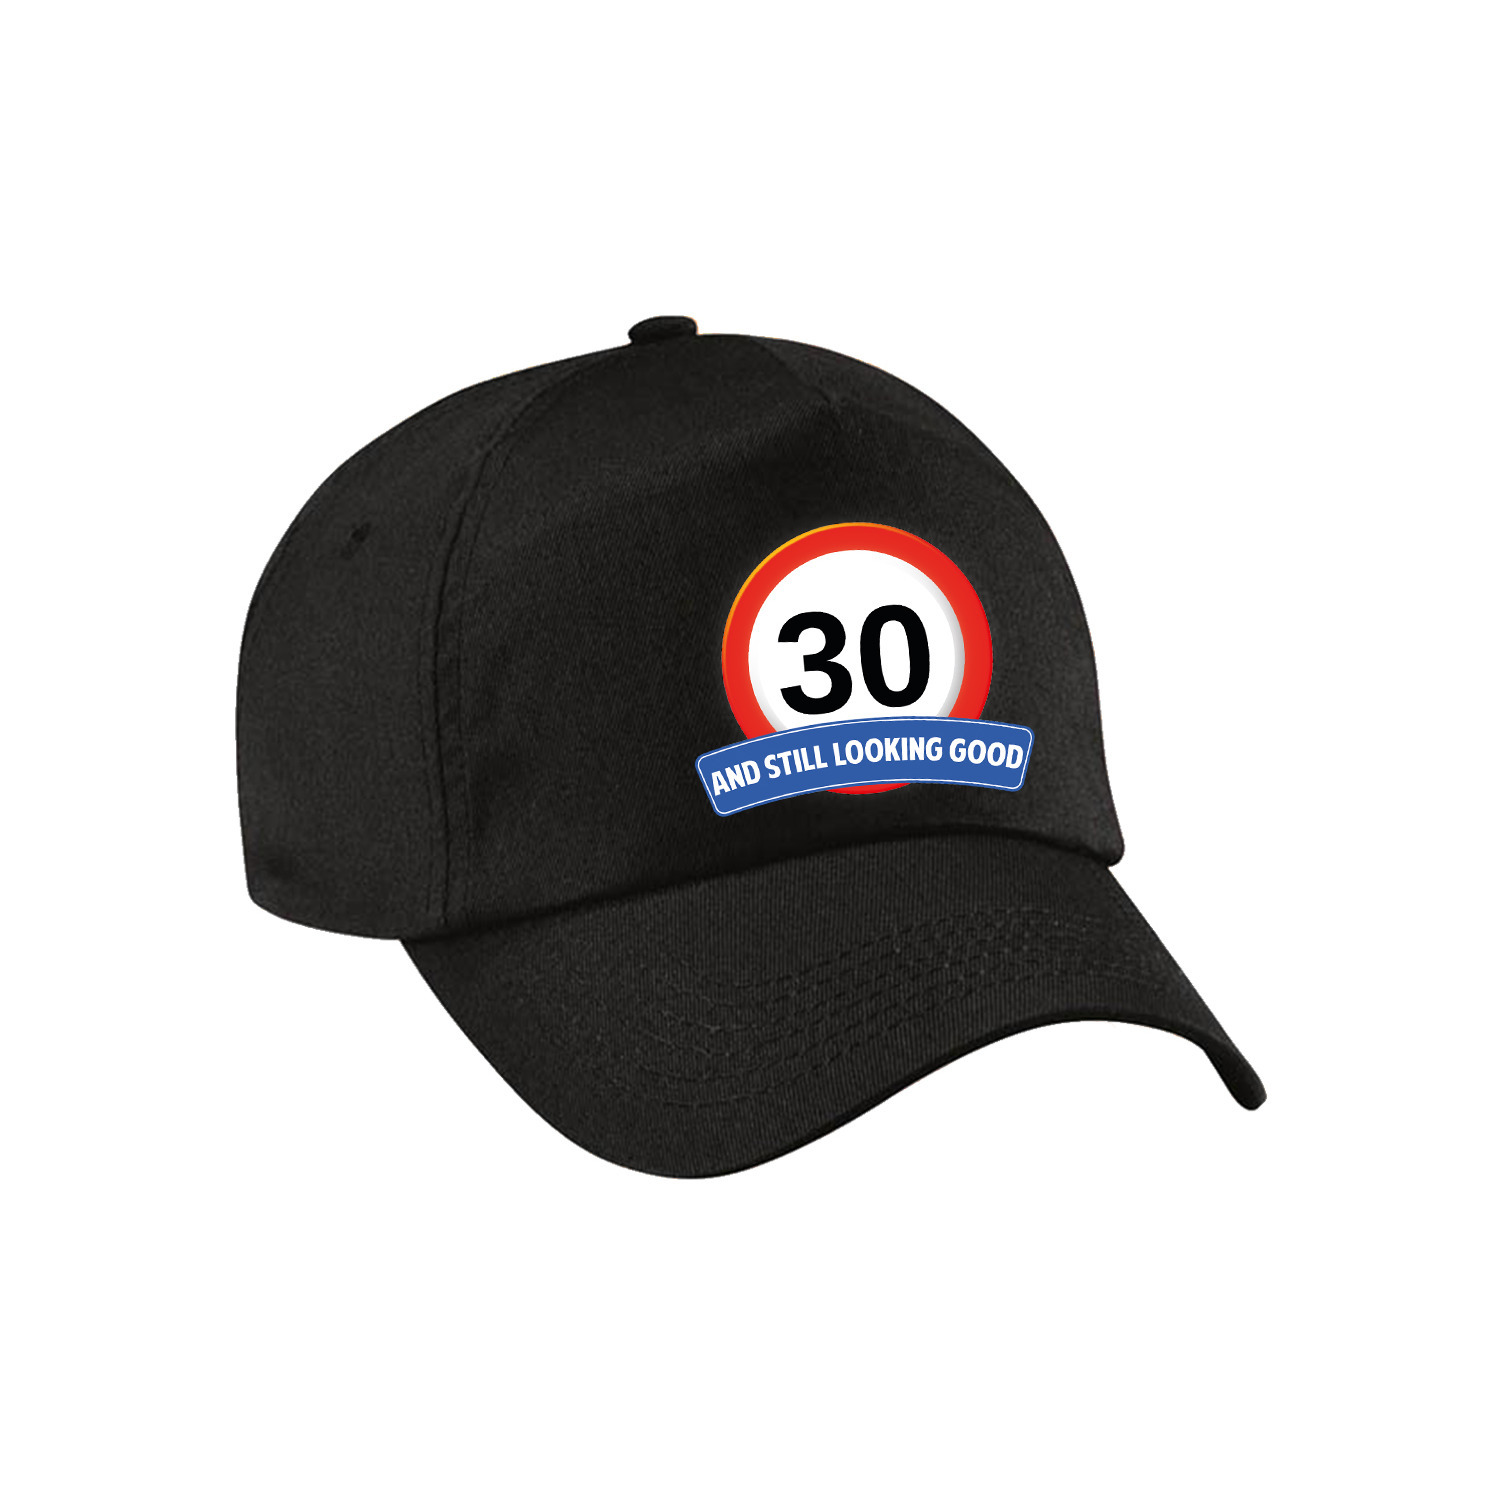 30 and still looking good stopbord pet-cap zwart voor volwassenen